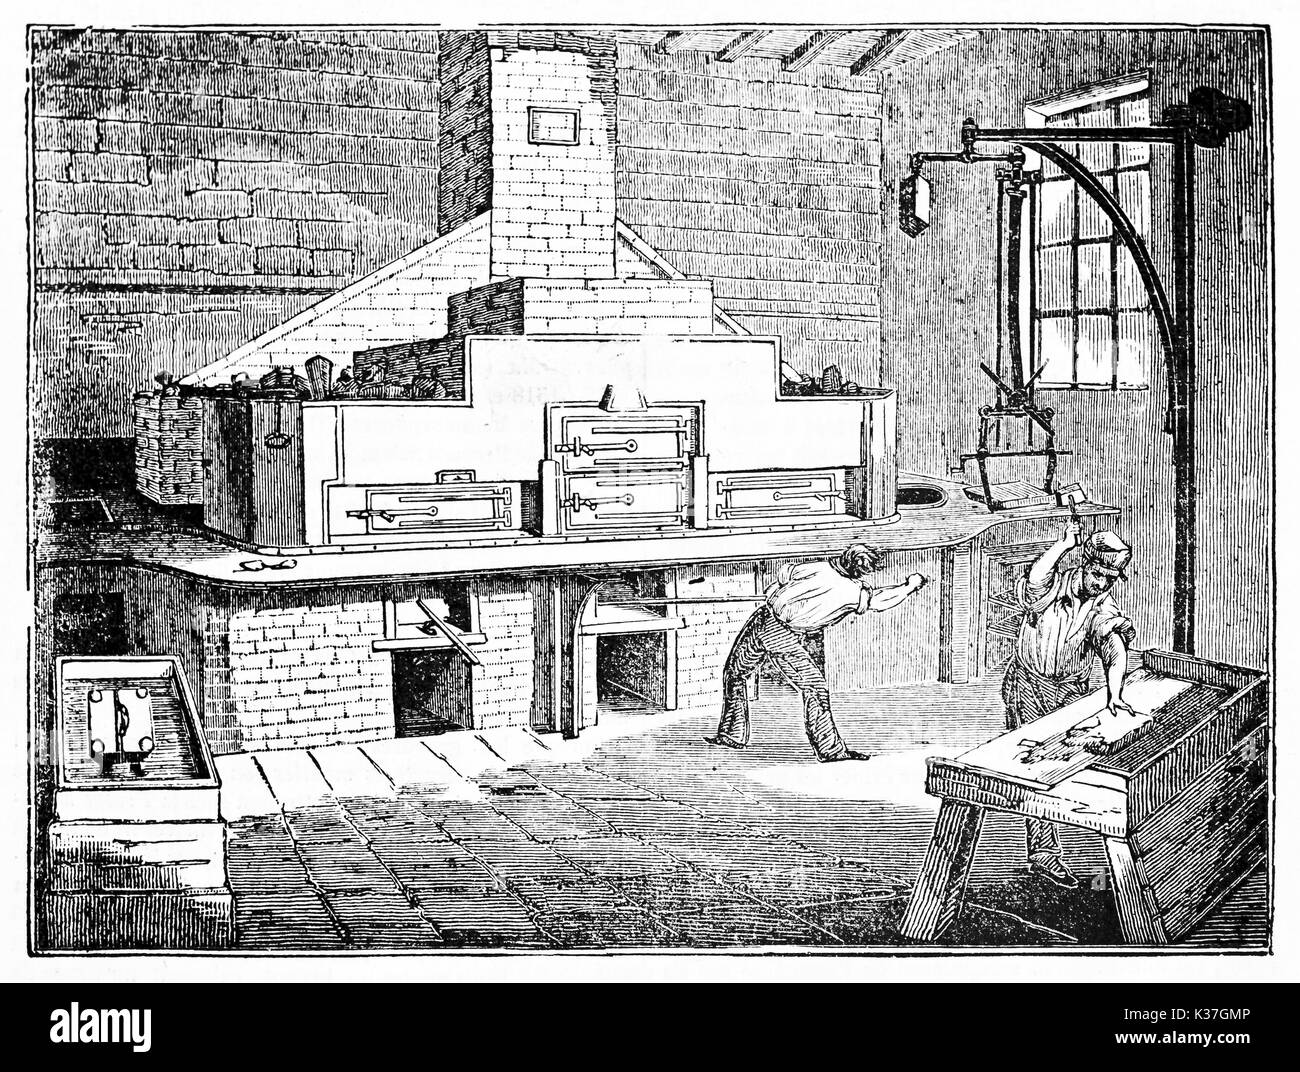 Les travailleurs anciens dans un grand atelier de stéréotypie (technique d'impression). Vieille Illustration d'auteur non identifié publié le magasin pittoresque Paris 1834 Banque D'Images